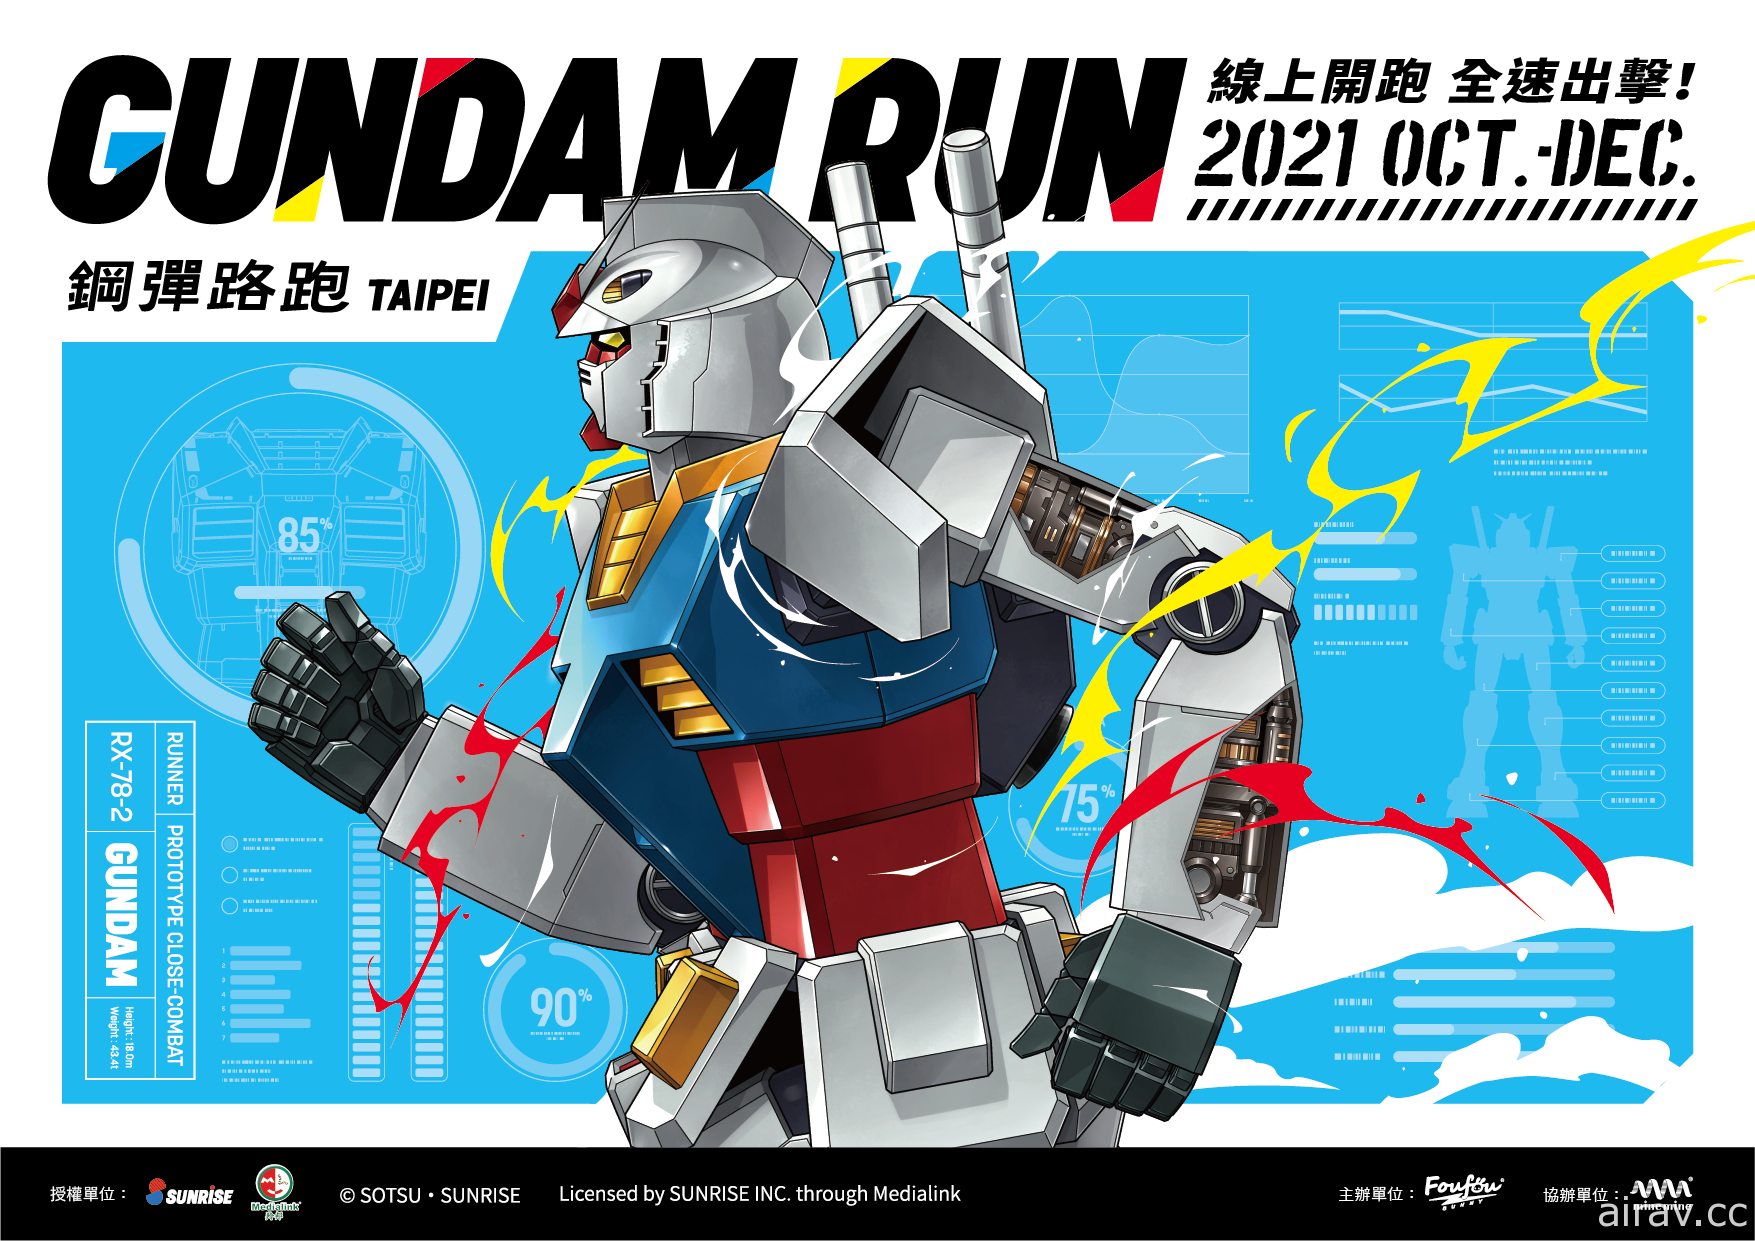 「鋼彈路跑 GUNDAM RUN TAIPEI」即日起開放報名 10 月正式展開活動